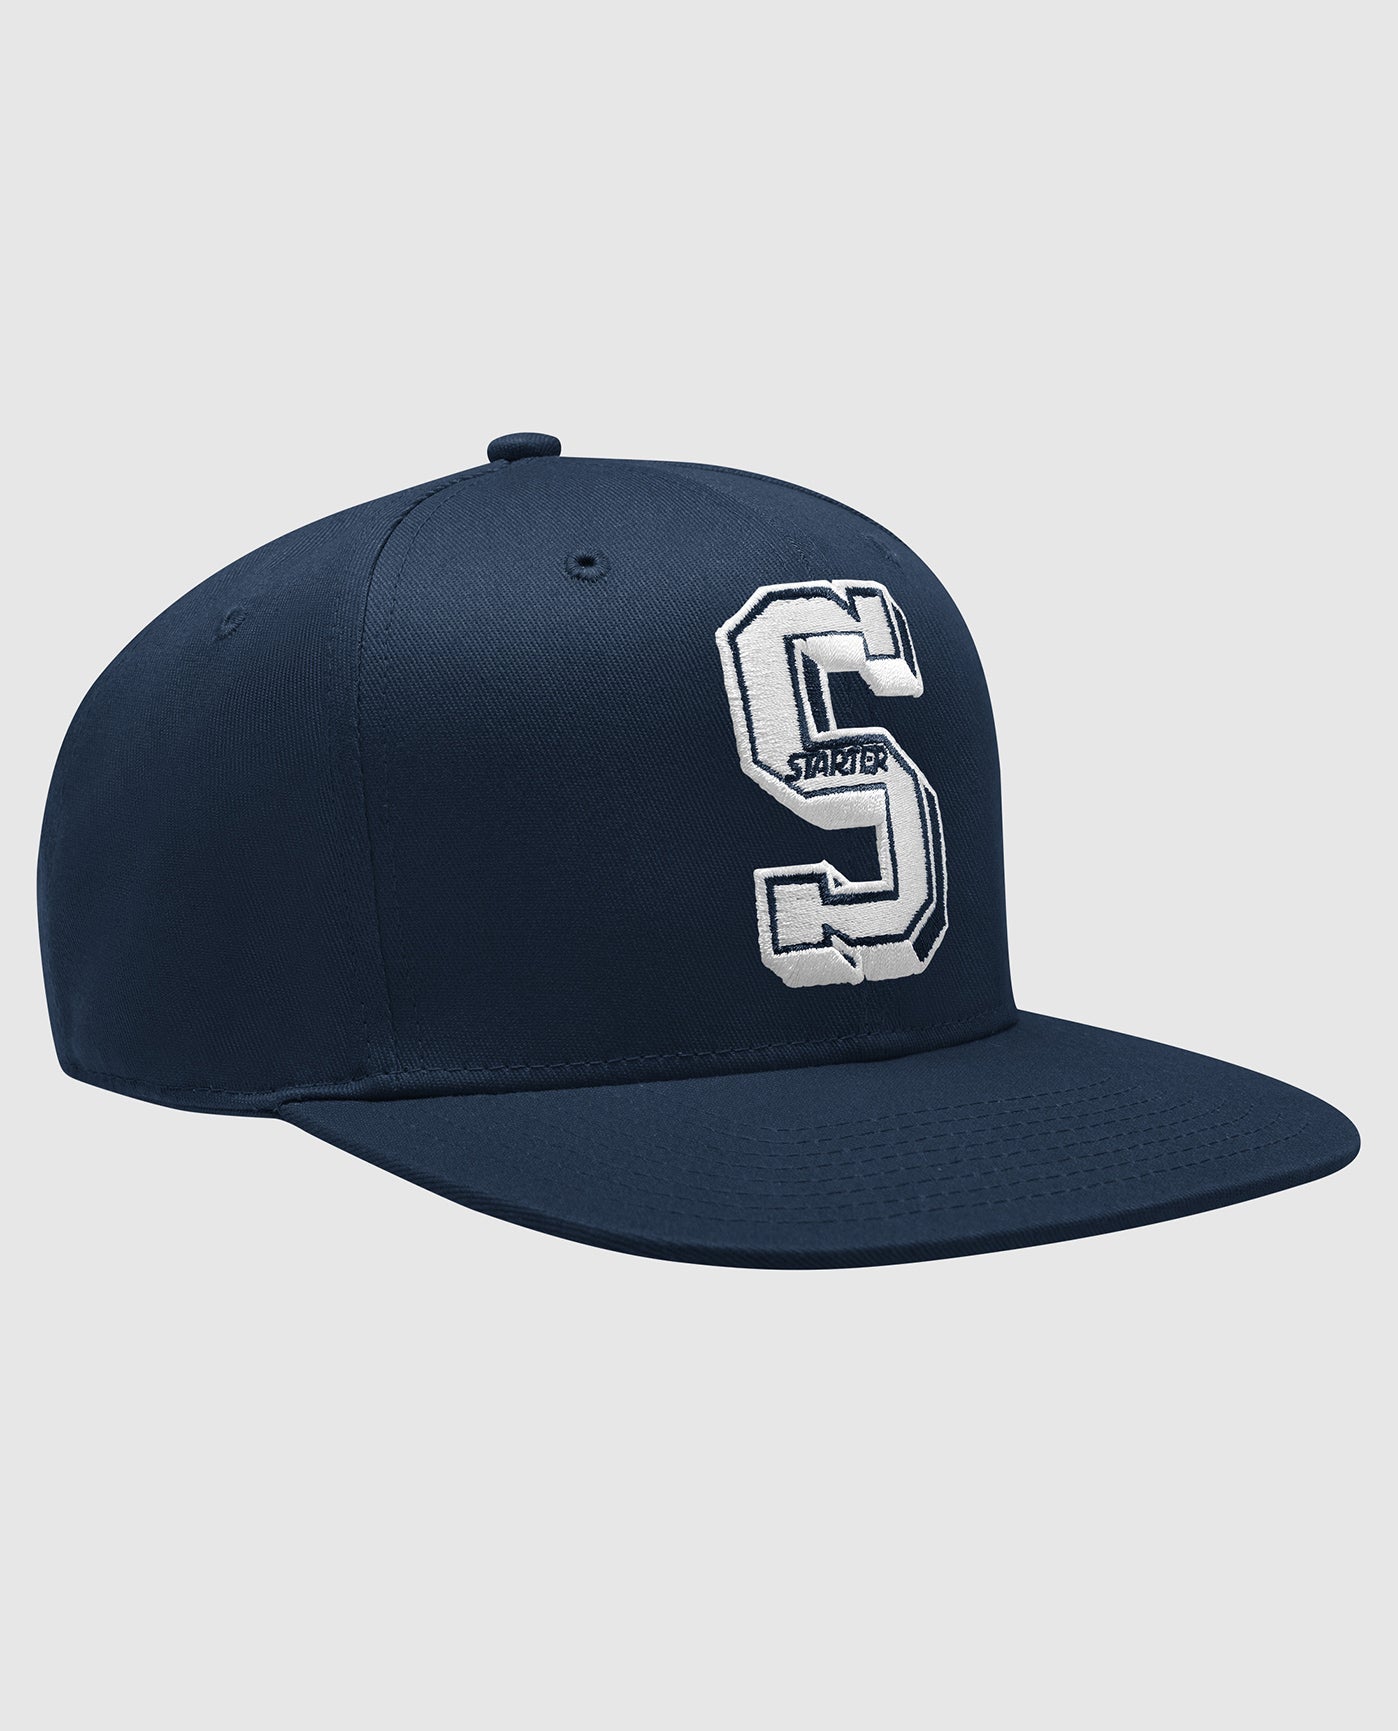 NHL St. Louis Blues Vintage Suede Grey Snapback Hat